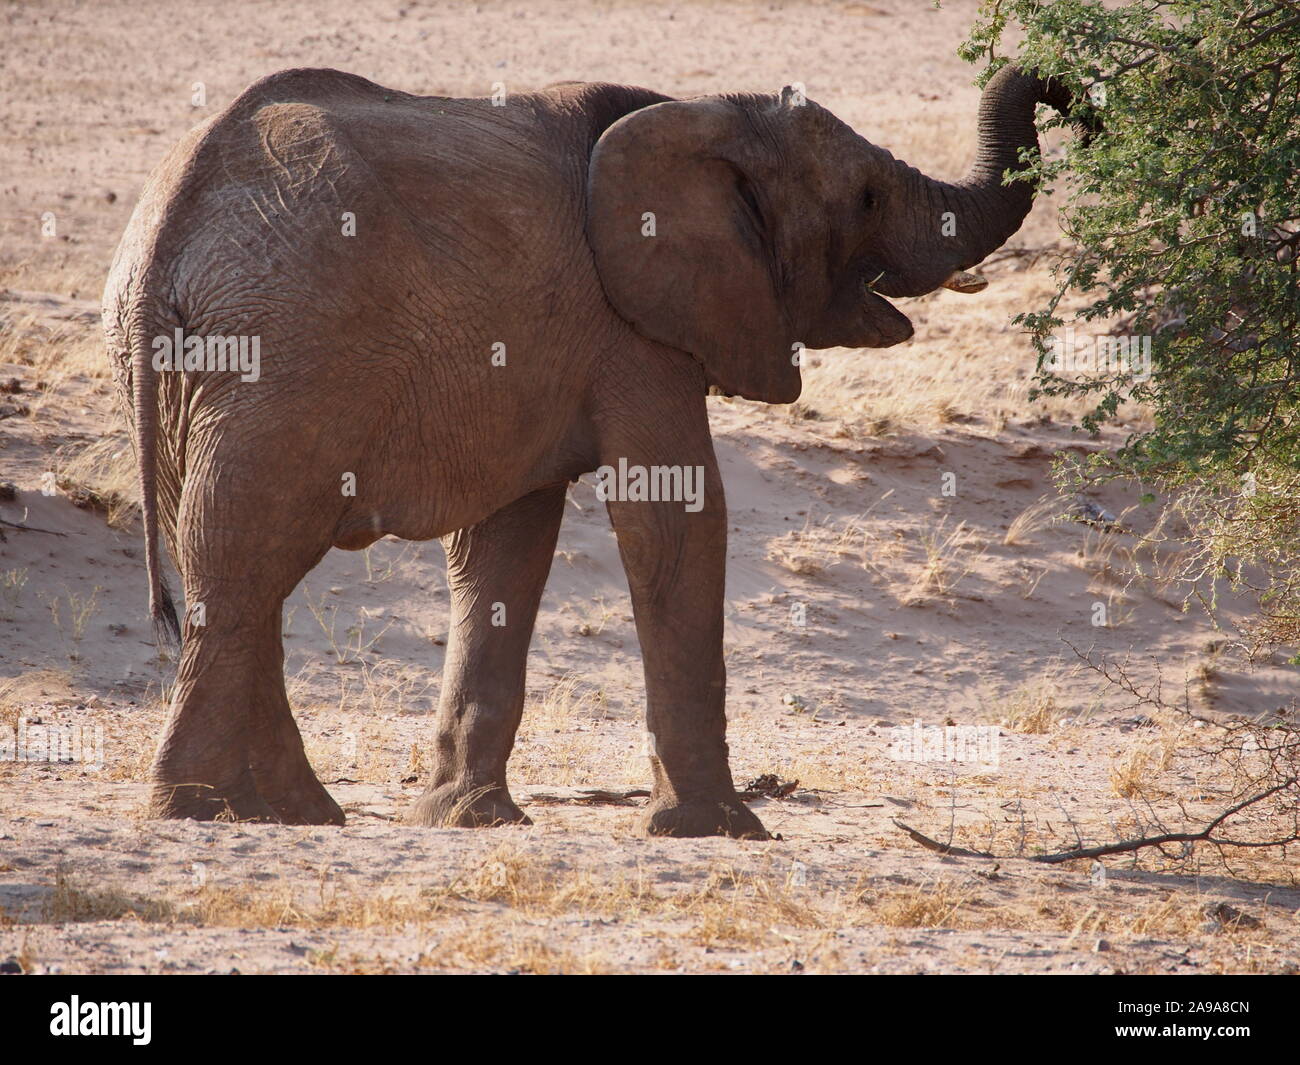 Doro Nawas Namibie désert !veau éléphant sur sa propre alimentation par arbre avec tronc jusqu Banque D'Images